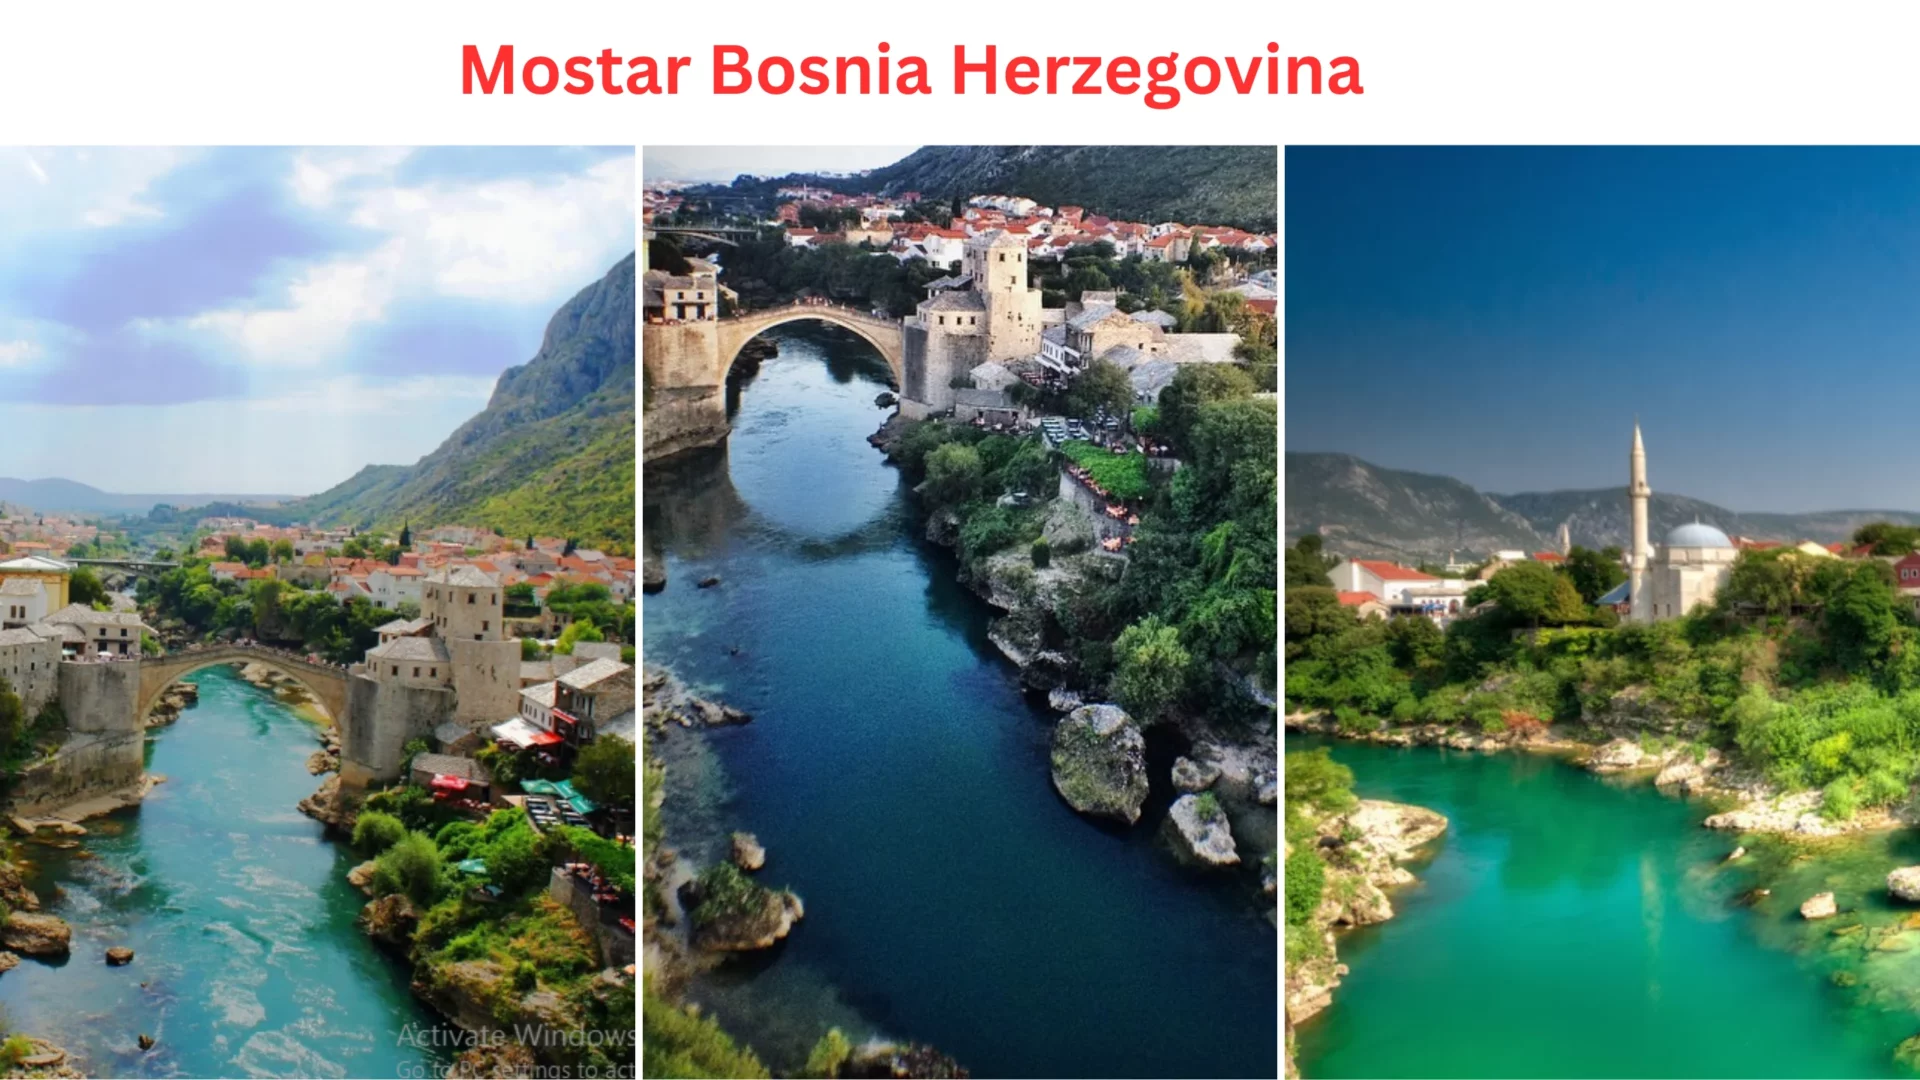 Solo Travel Destination: Mostar, Bosnia Herzegovina